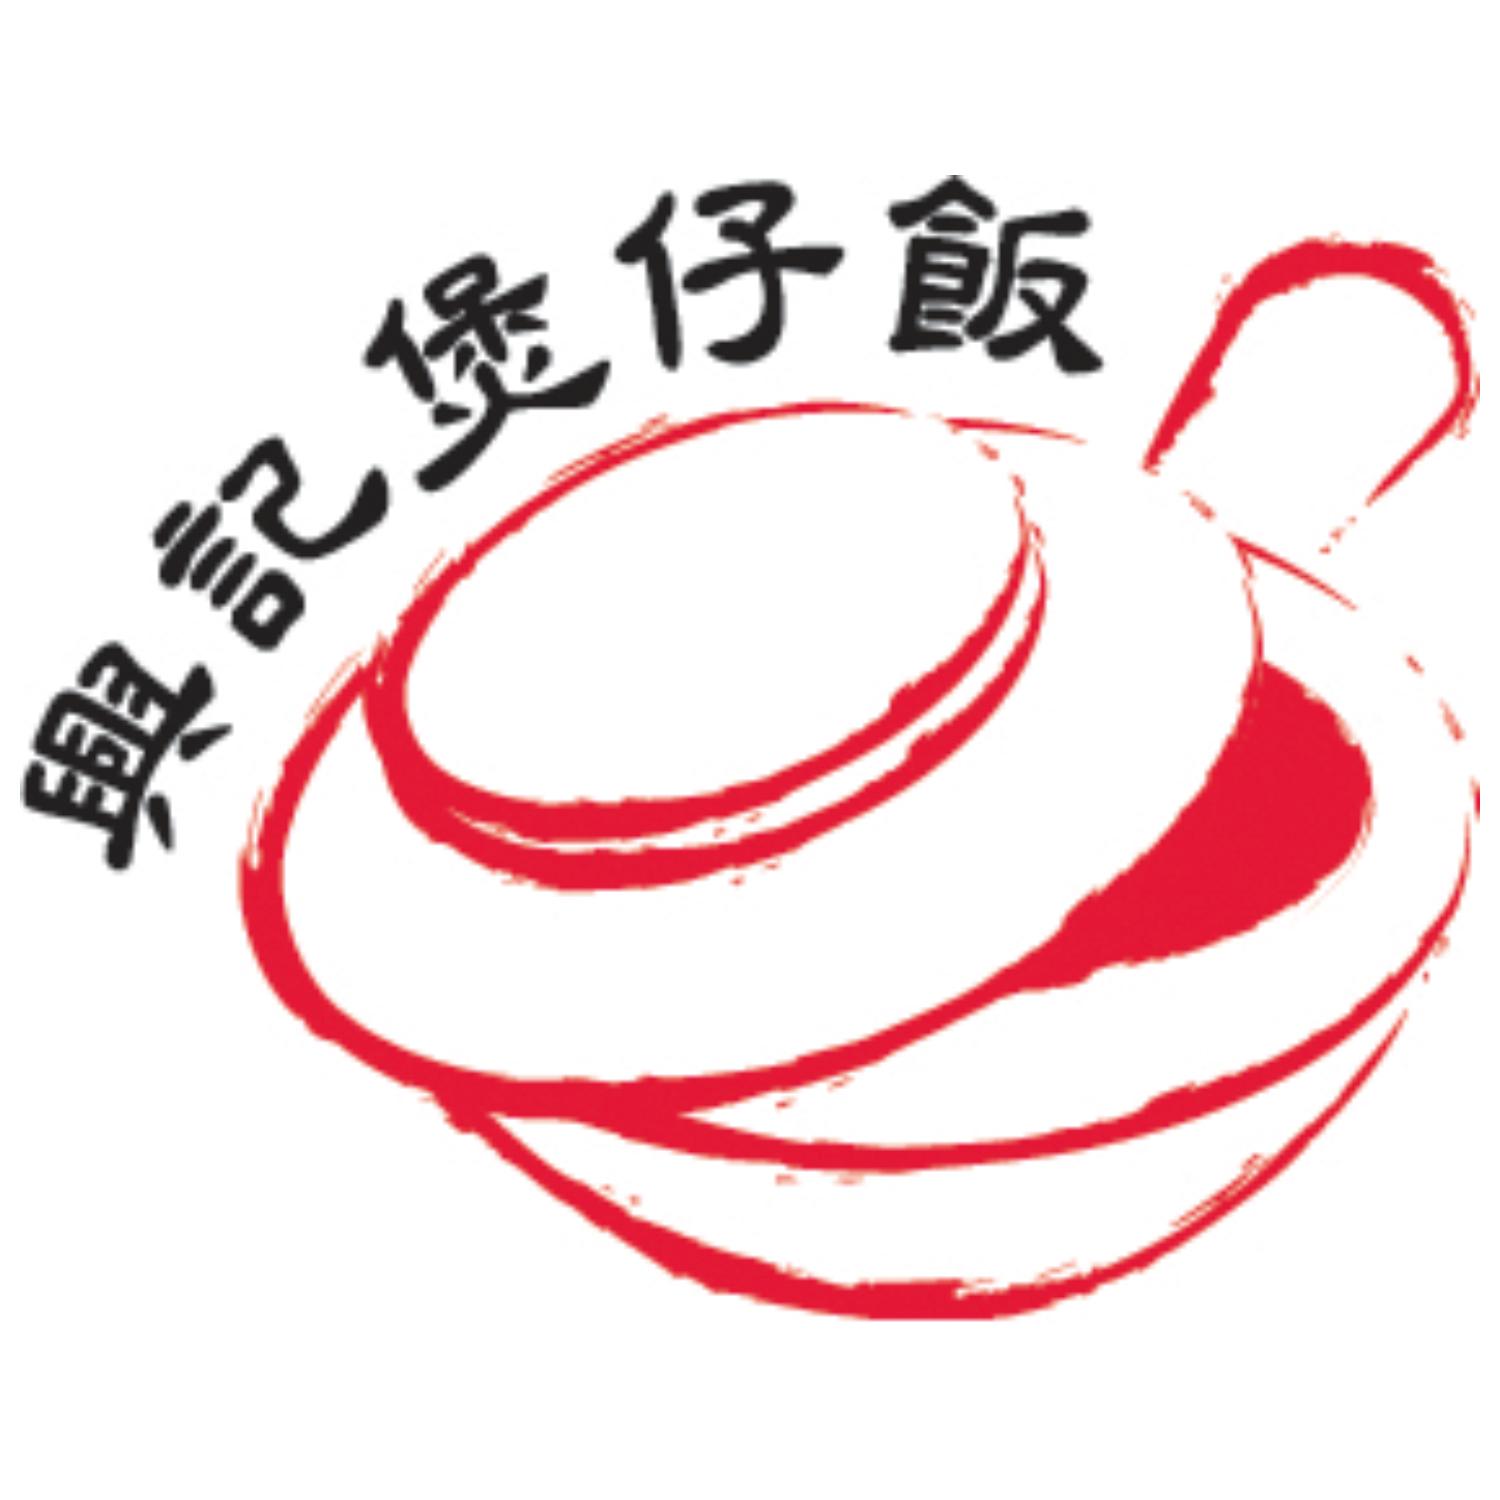 港式煲仔饭logo图片